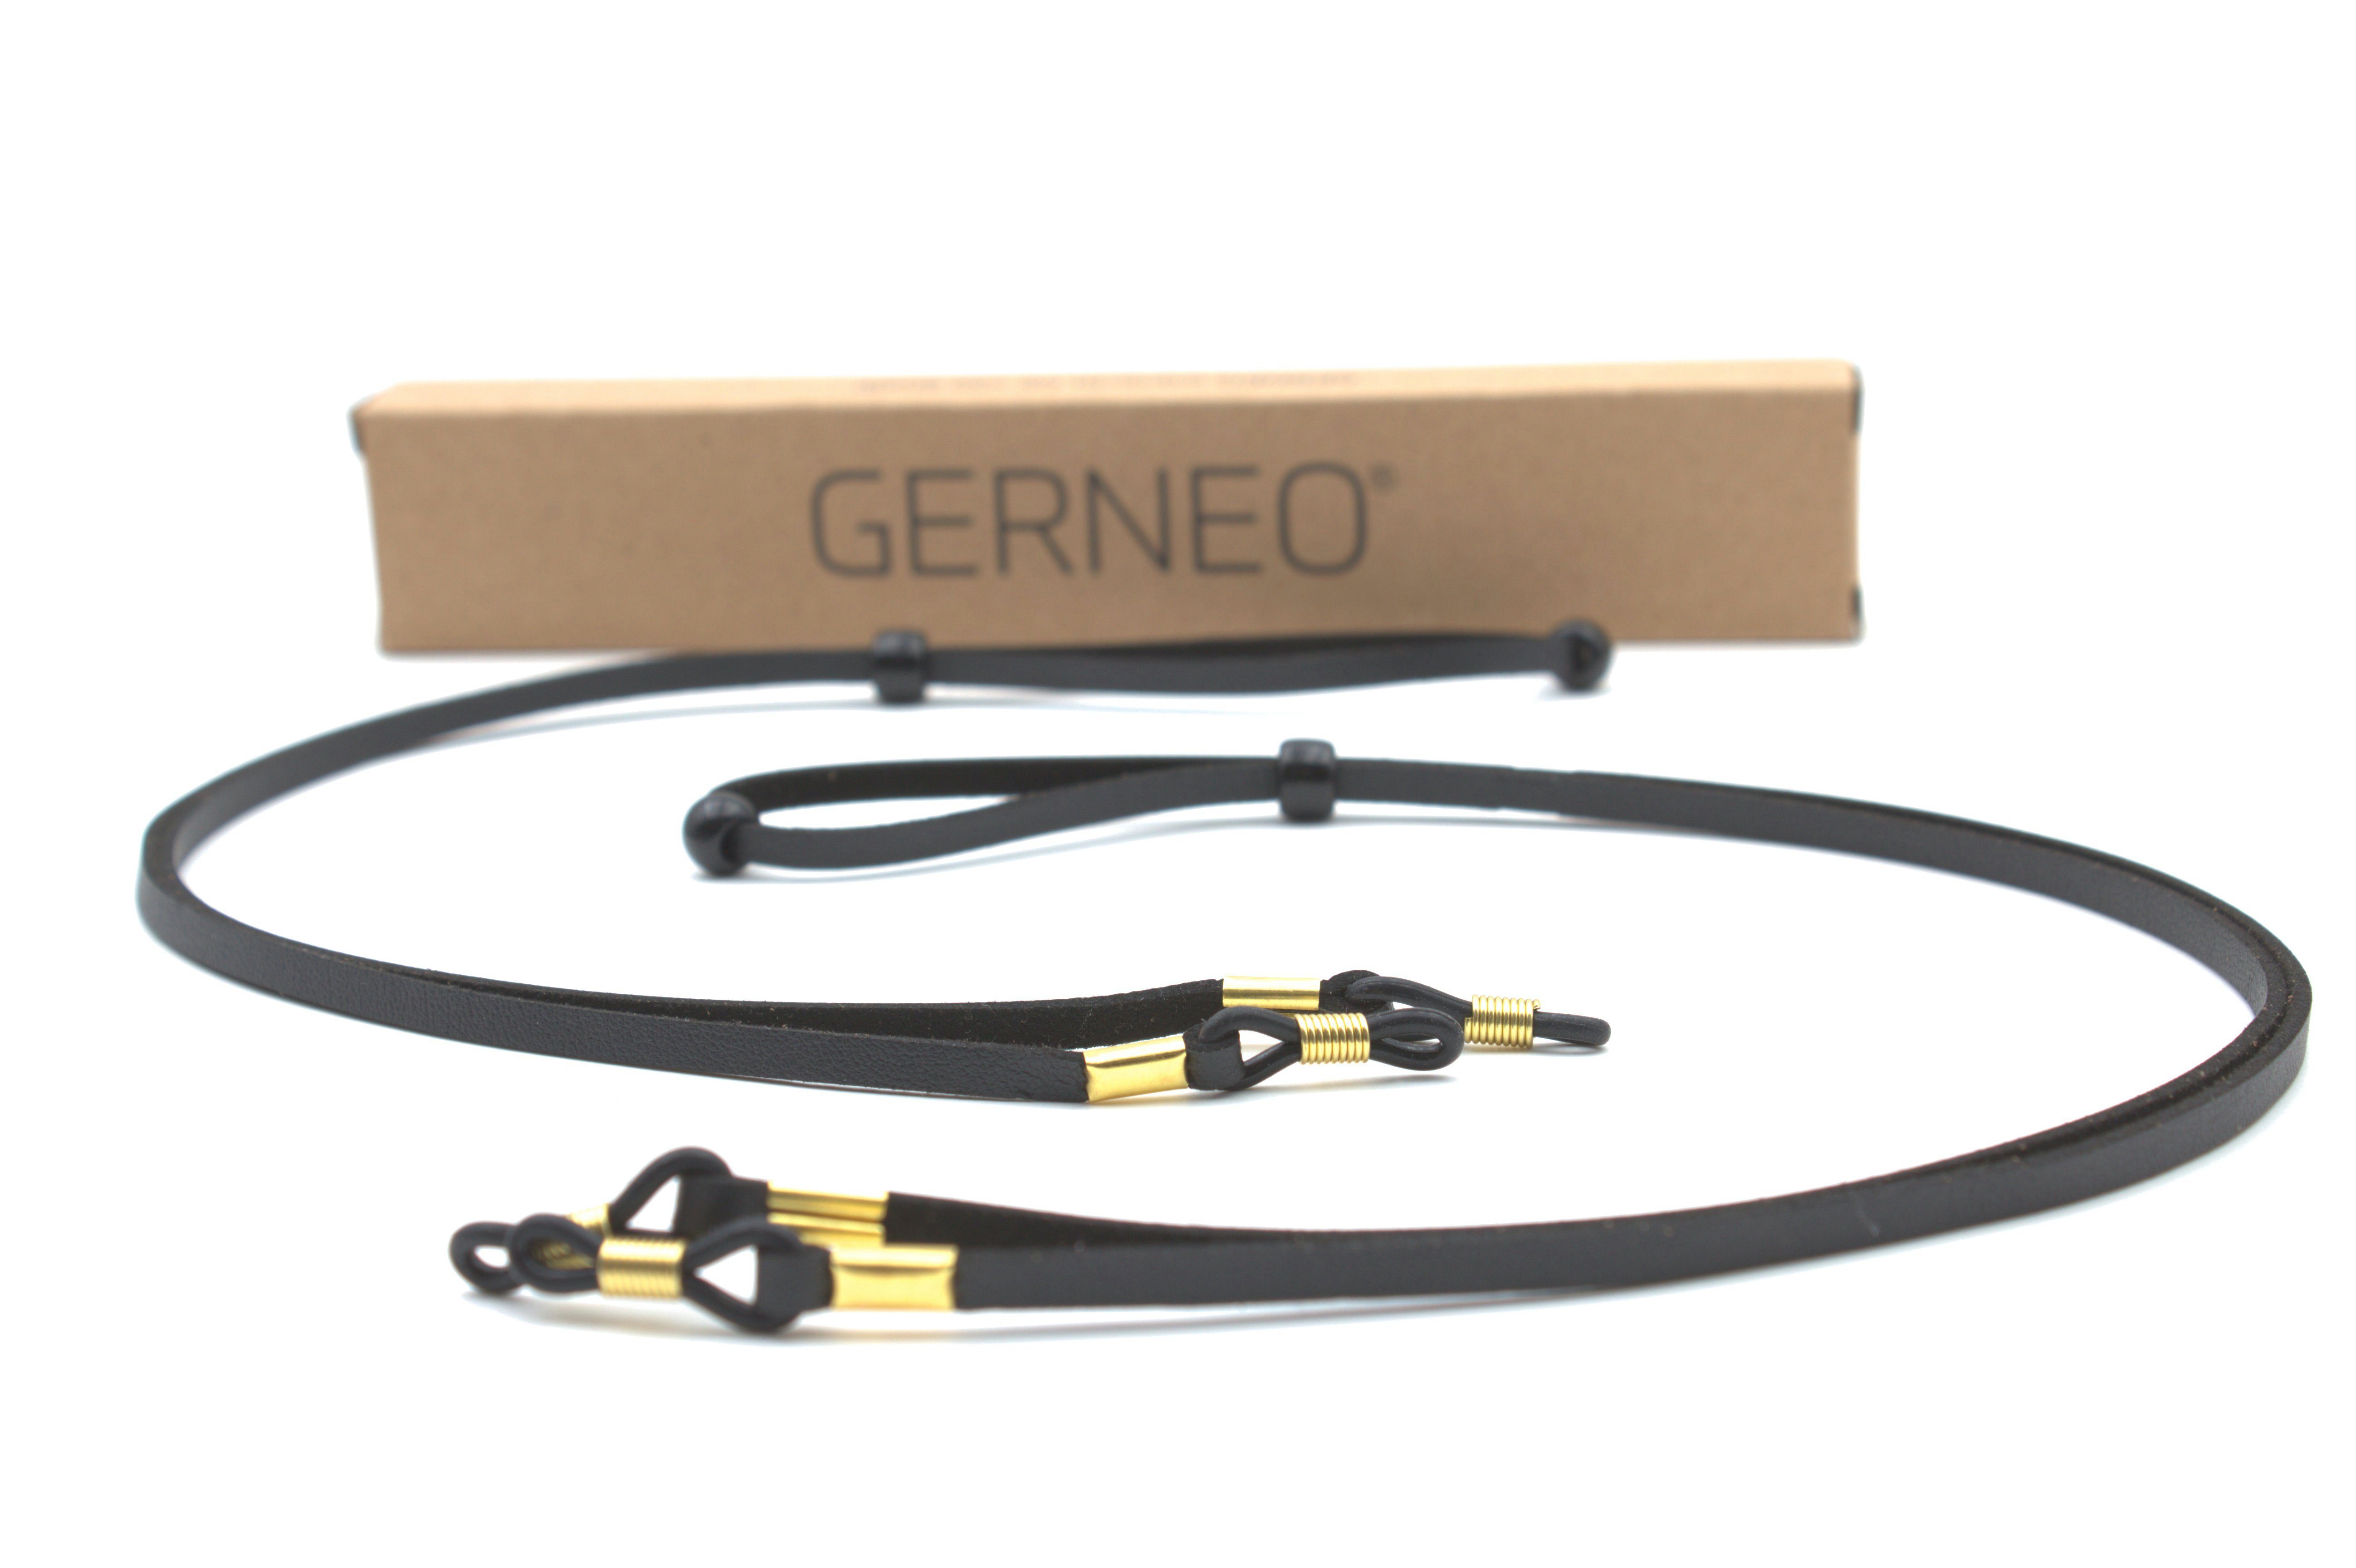 GERNEO Brillenband GERNEO® - Bilbao Leder- Wildlederoptik, Halterungen & Band hellbraun & schwarz – Brillenband 2x-Schwarz – Brillenkordel – hochwertiges gold PU